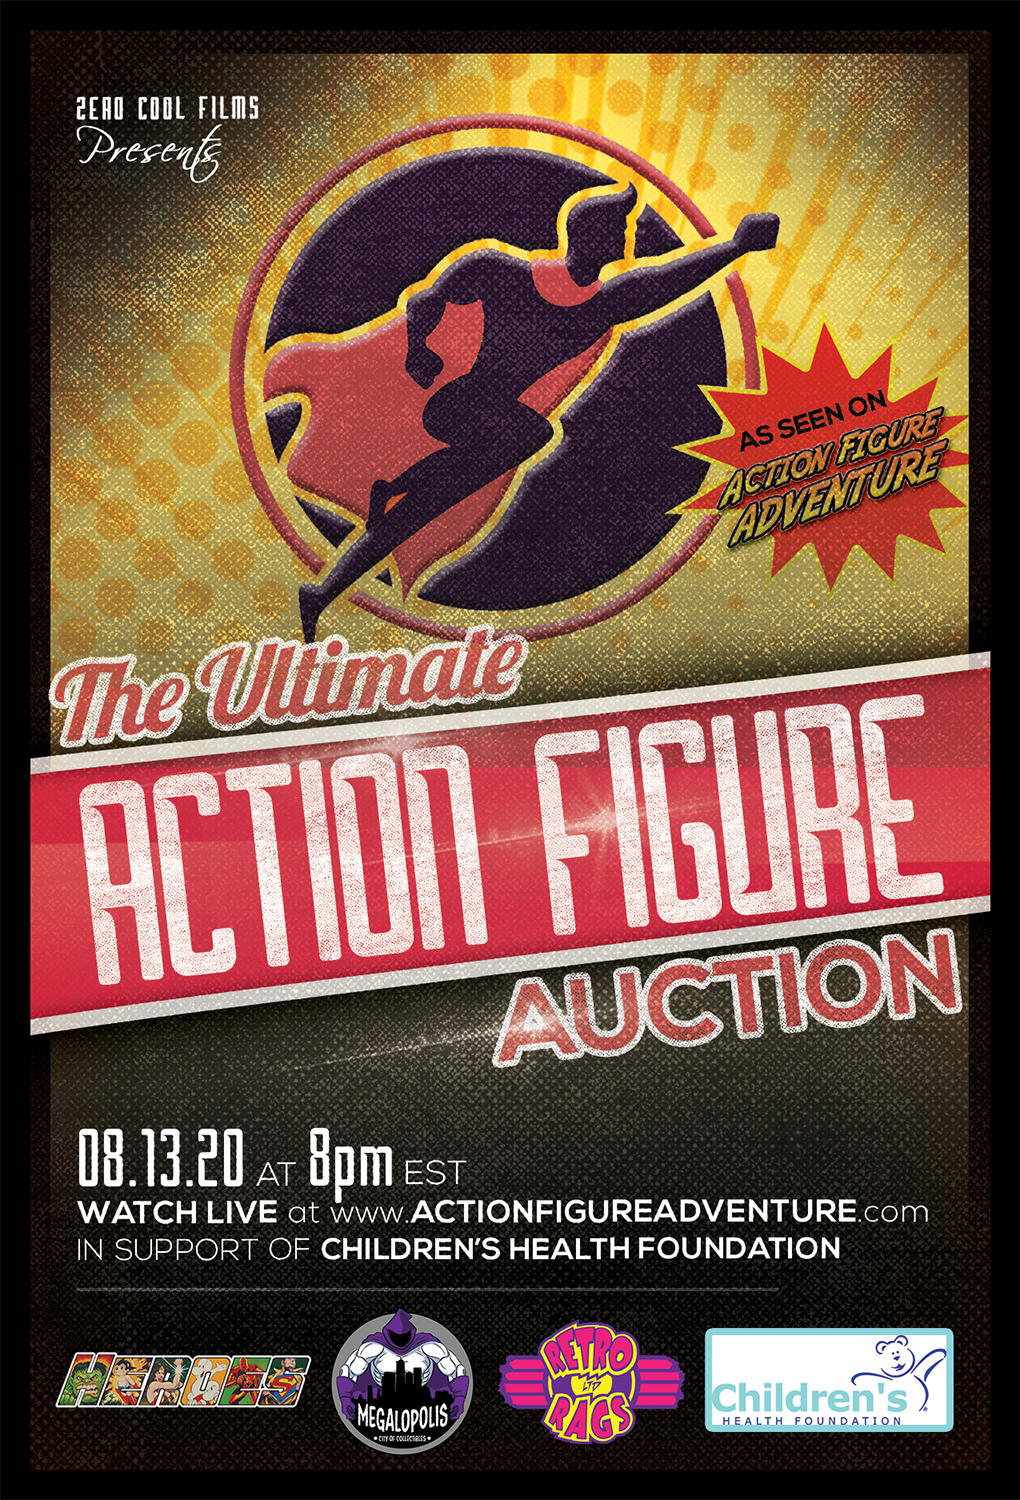 Action Figure Adventure Auction